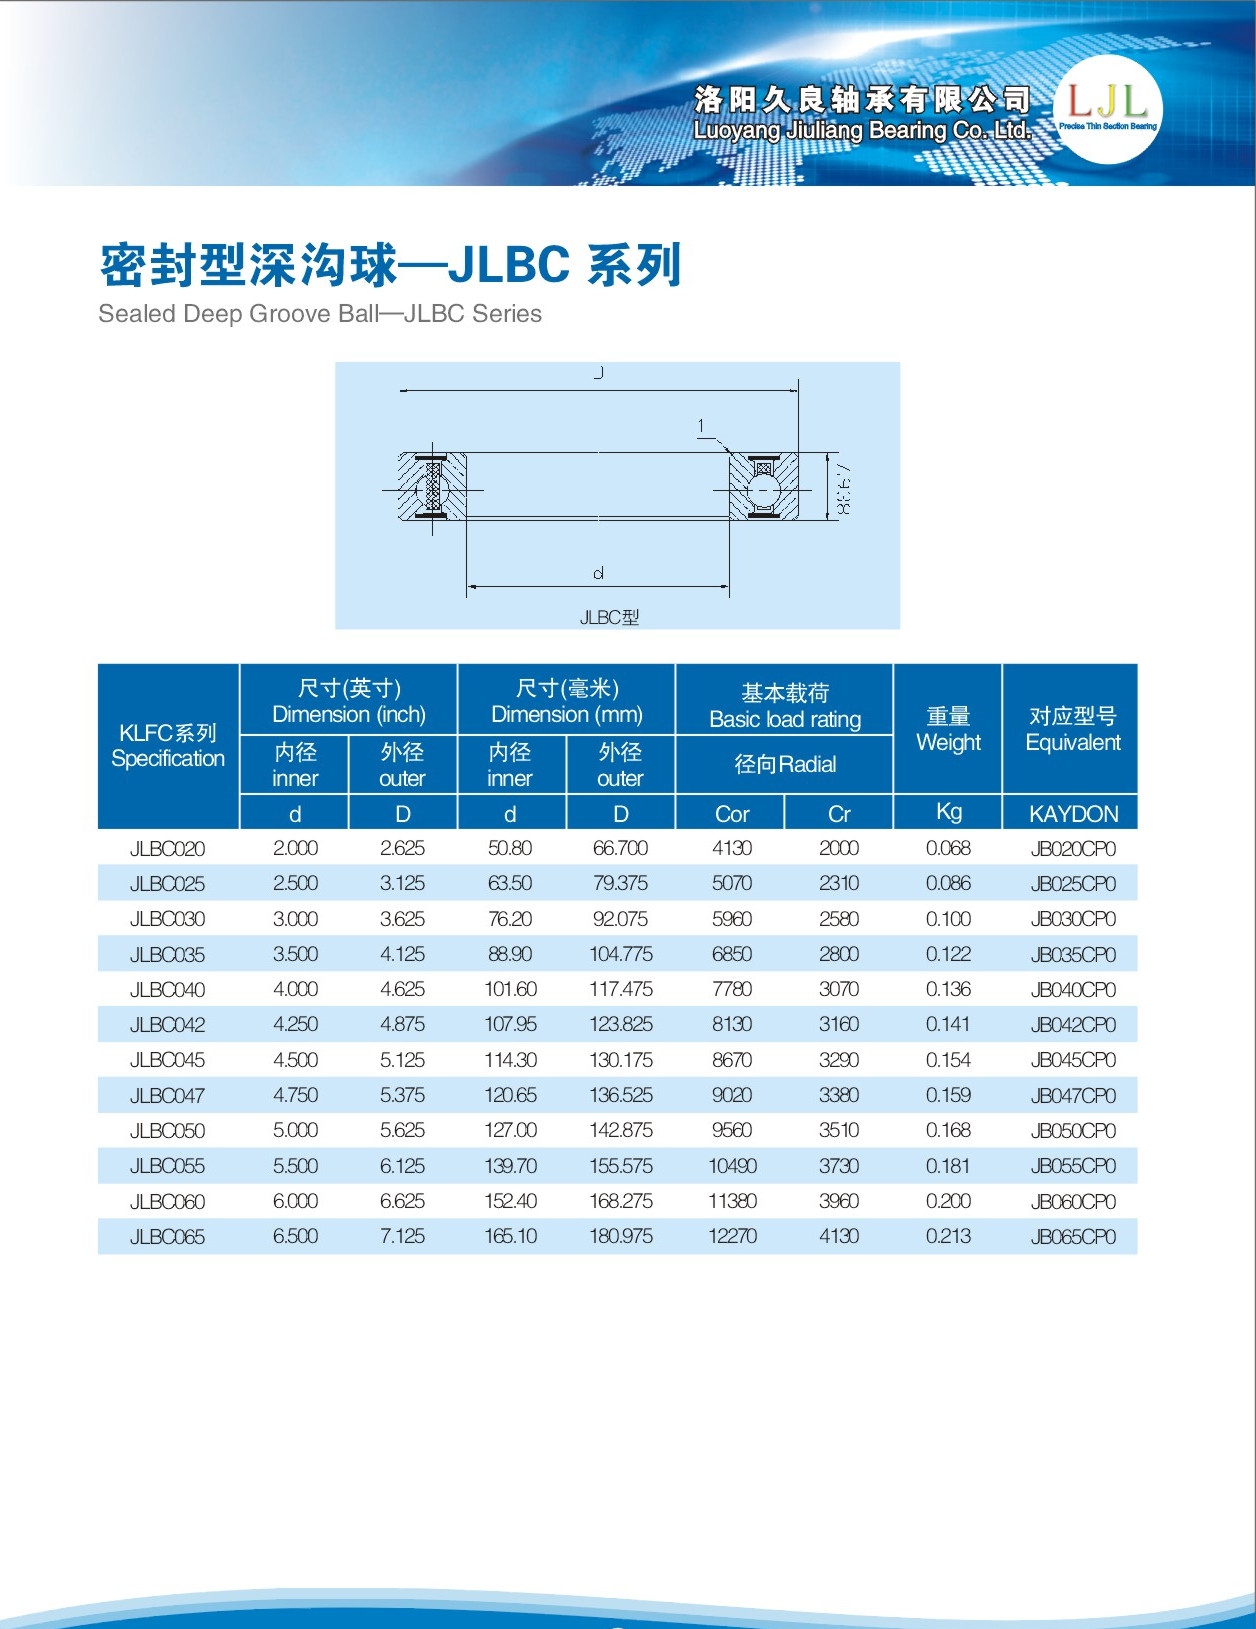 JLBC020	 | 
JLBC025	 | 
JLBC030	 | 
JLBC035	 | 
JLBC040	 | 
JLBC042	 | 
JLBC045	 | 
JLBC047	 | 
JLBC050	 | 
JLBC055	 | 
JLBC060	 | 
JLBC065	 | 